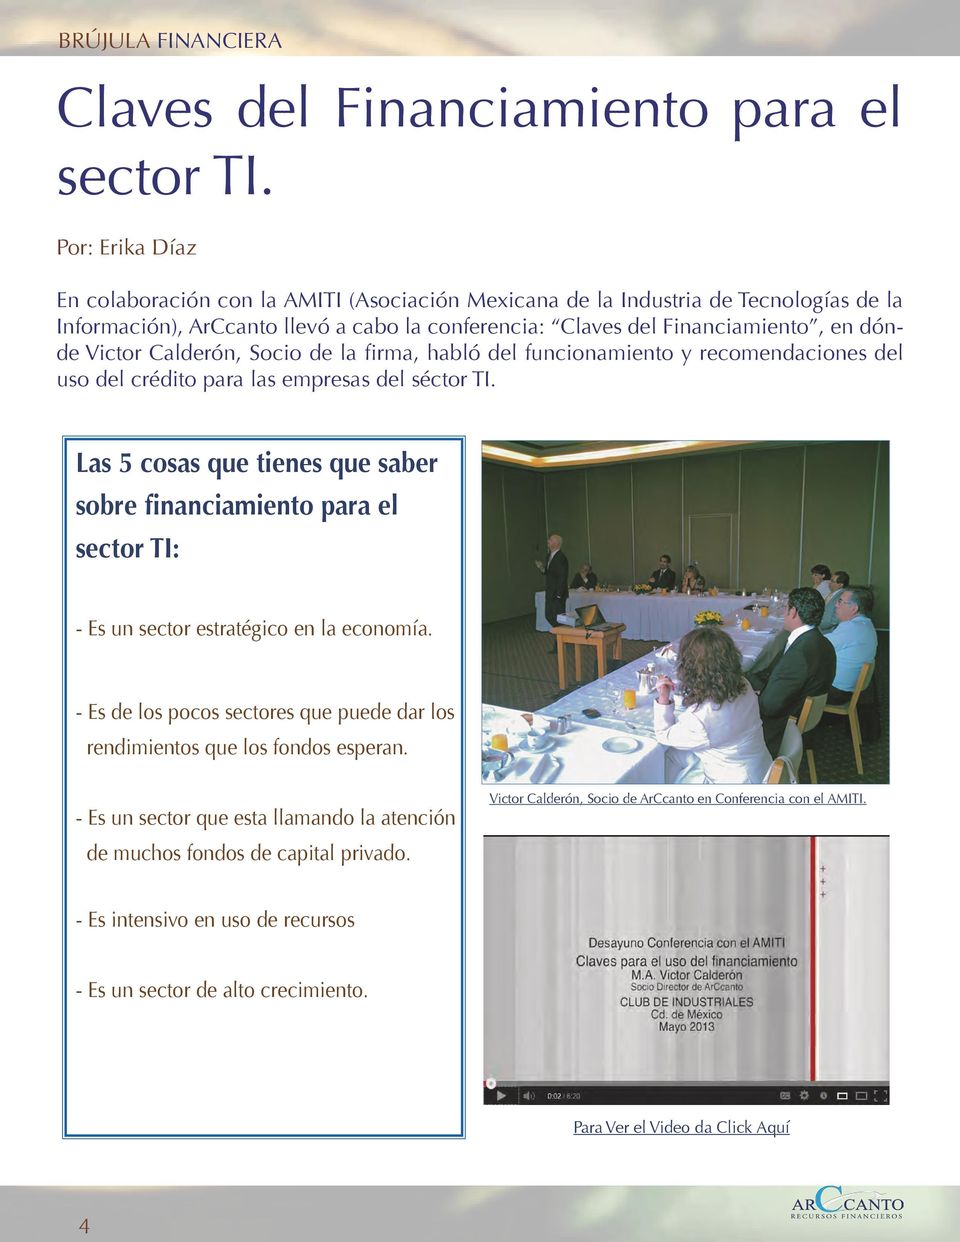 Calderón, Socio de la firma, habló del funcionamiento y recomendaciones del uso del crédito para las empresas del séctor TI.